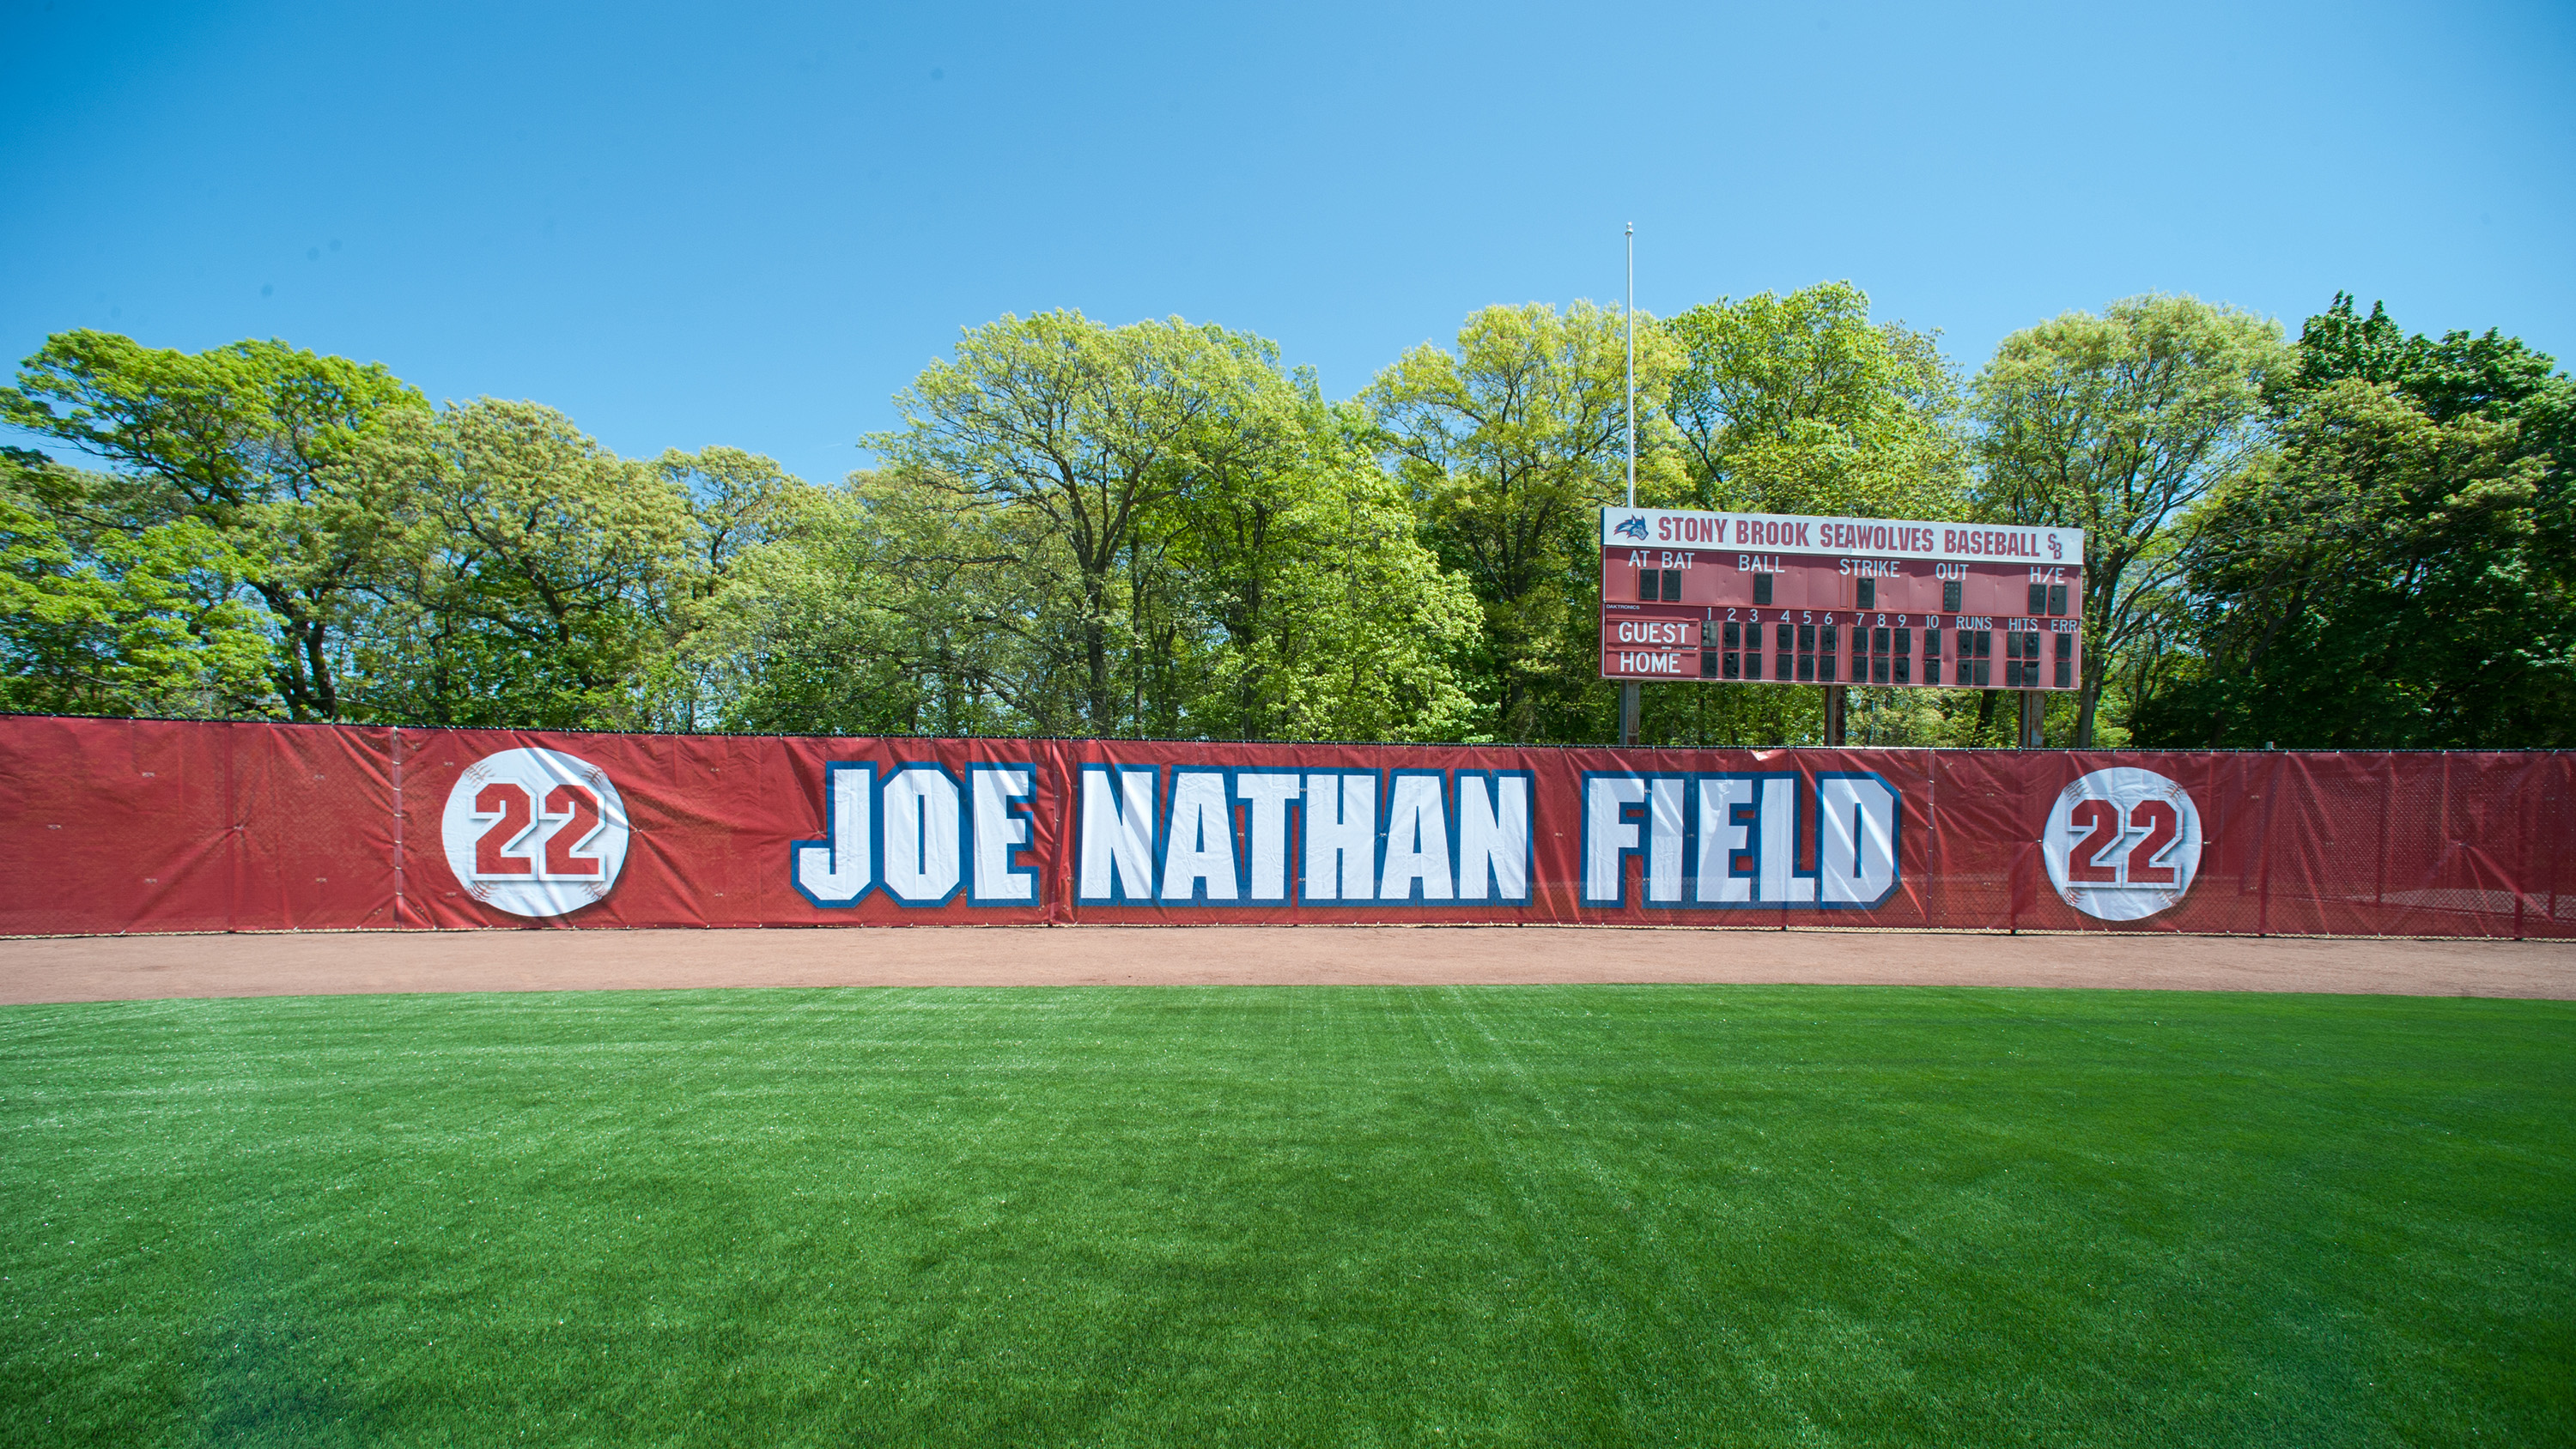 Summer Camps Spotlight Joe Nathan Field